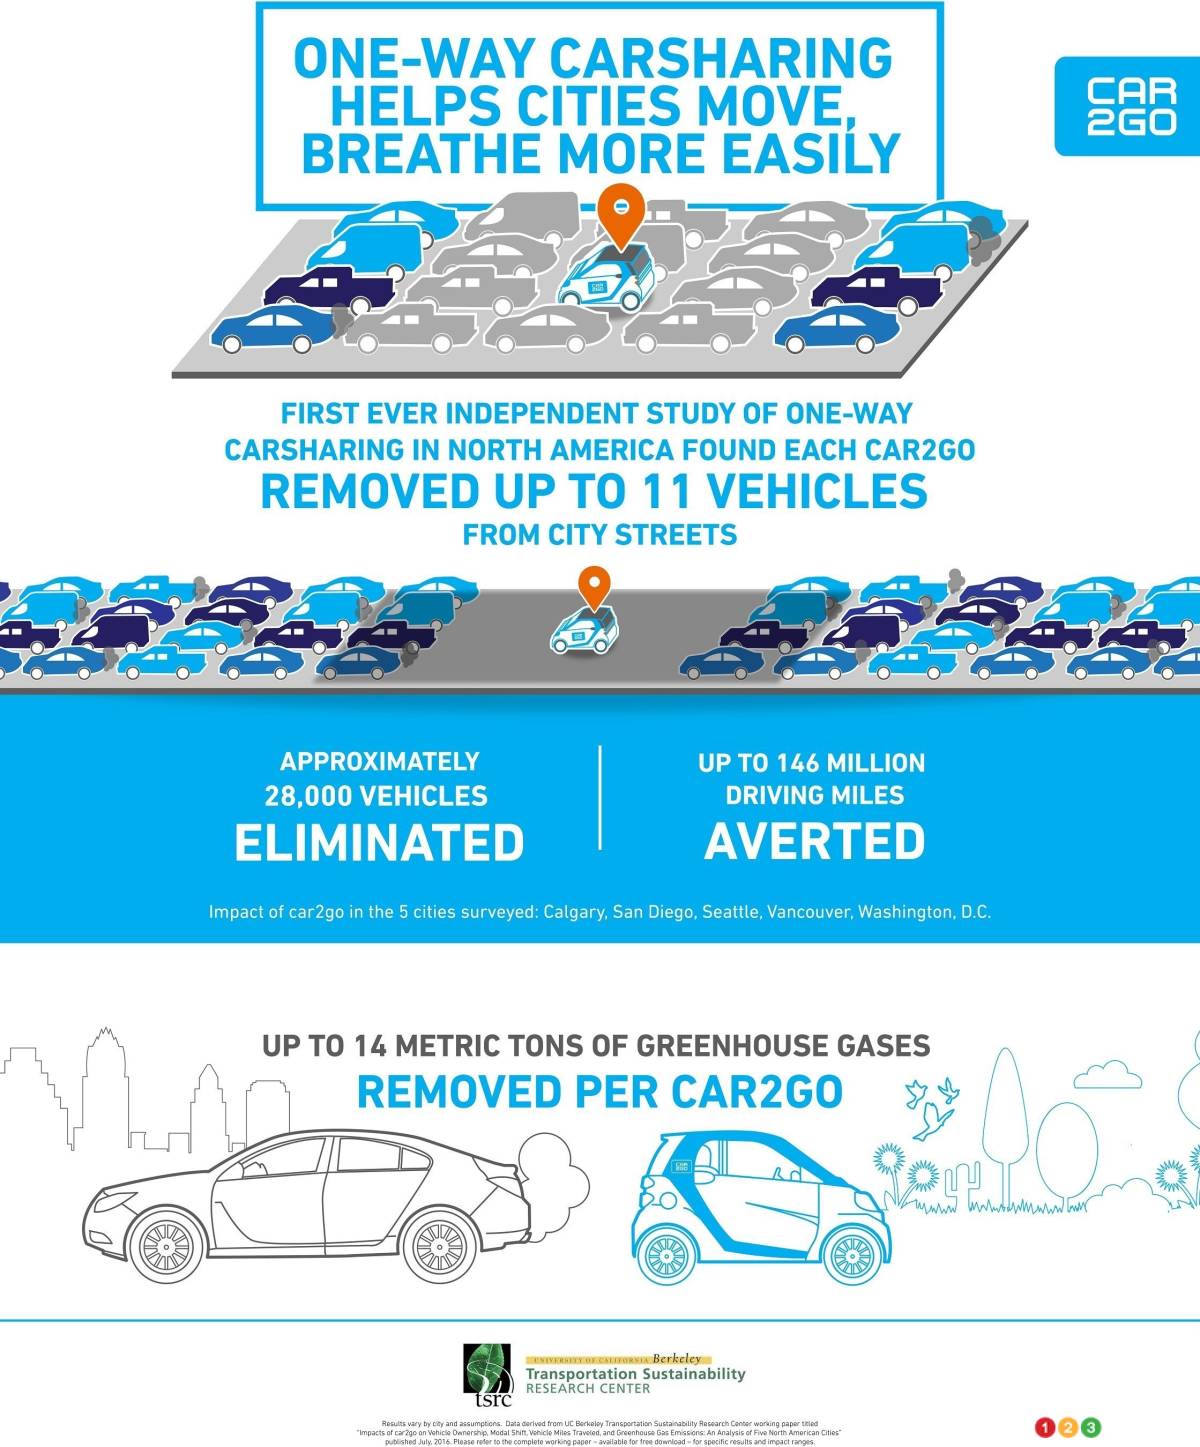 L’autopartage, dont car2go, réduit la congestion routière